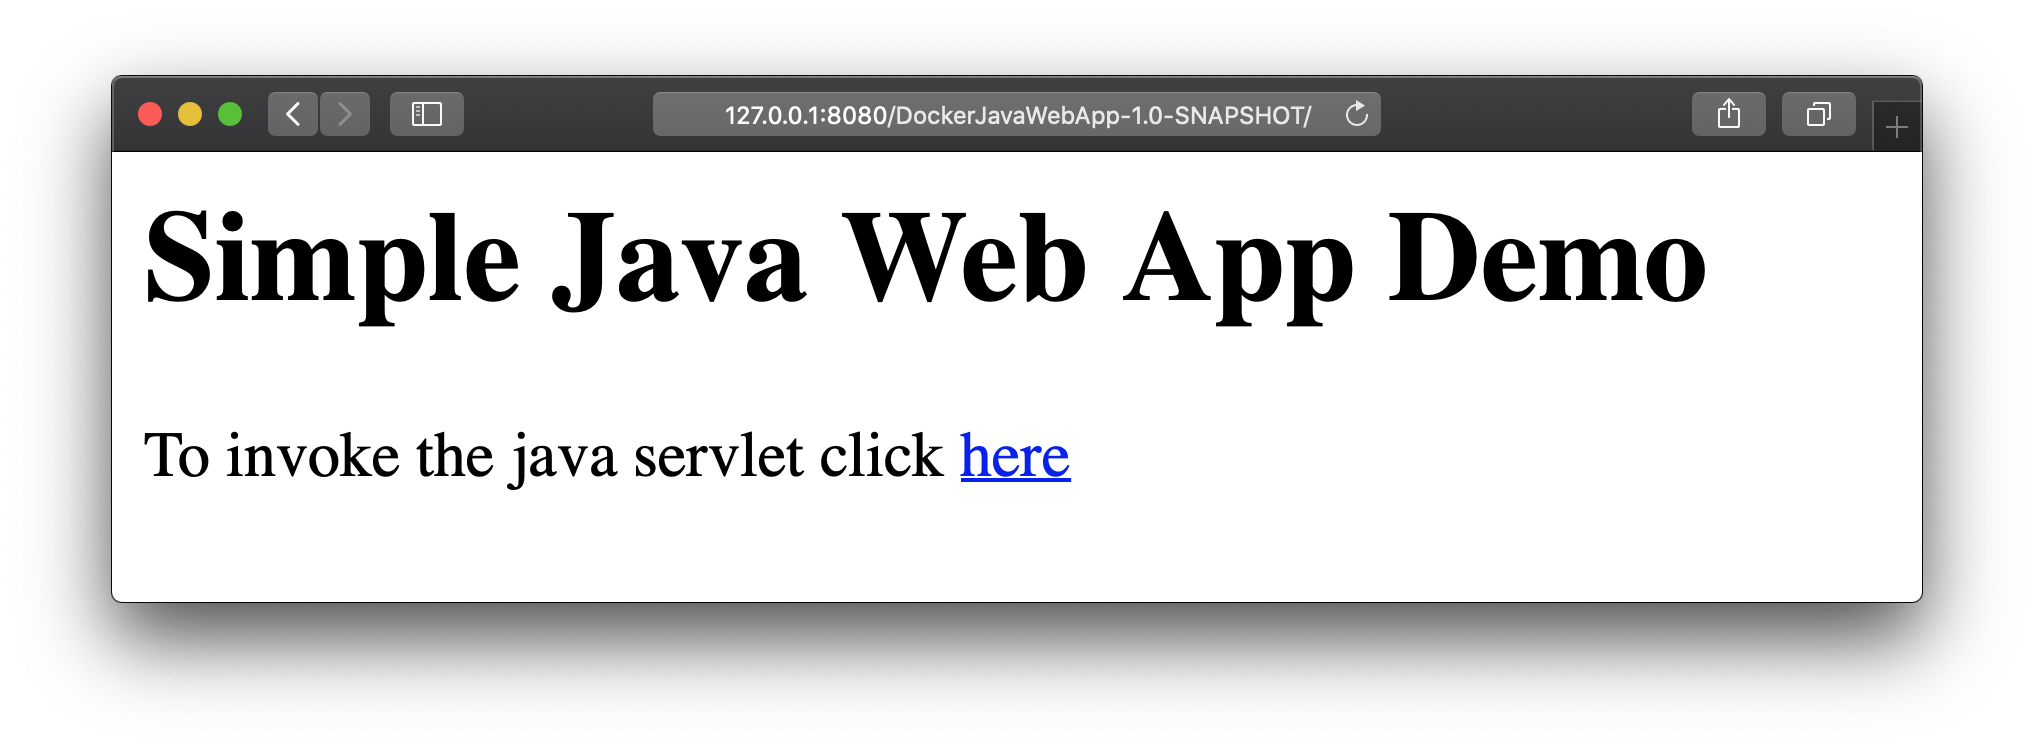 Simple Java Web App Demo start page